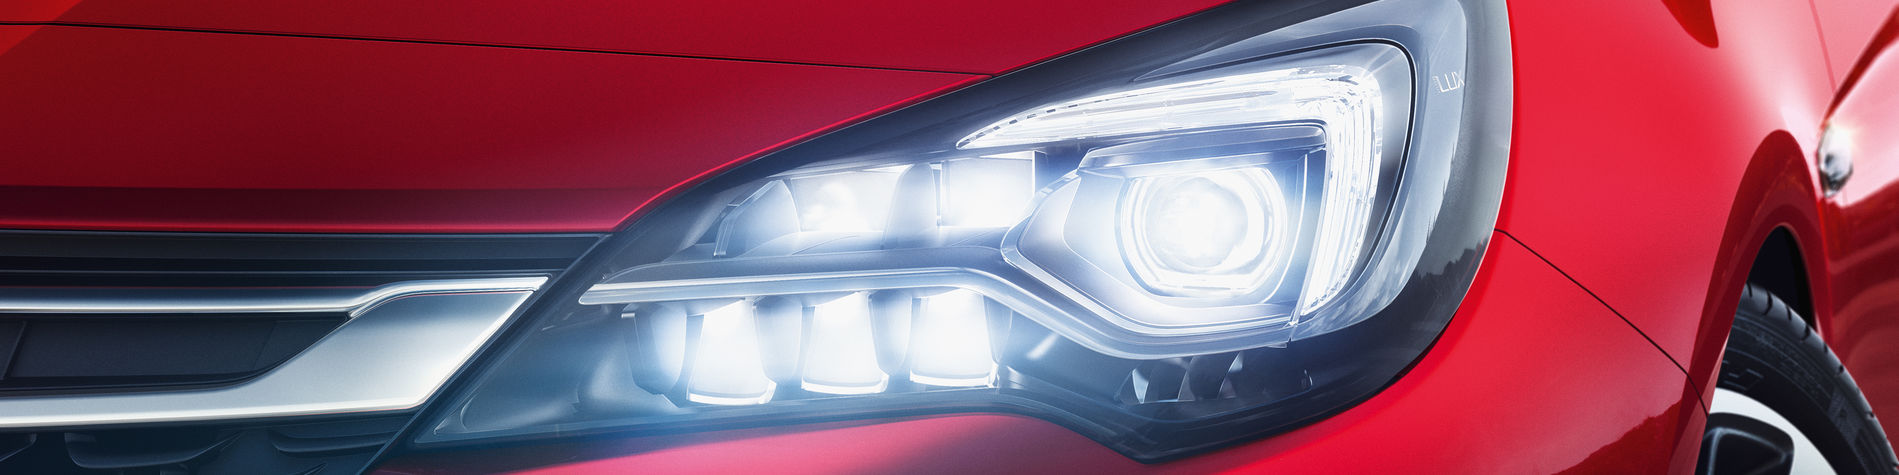 Licht-Vergleich: Welcher Scheinwerfer für Ihr Auto? - TCS Schweiz